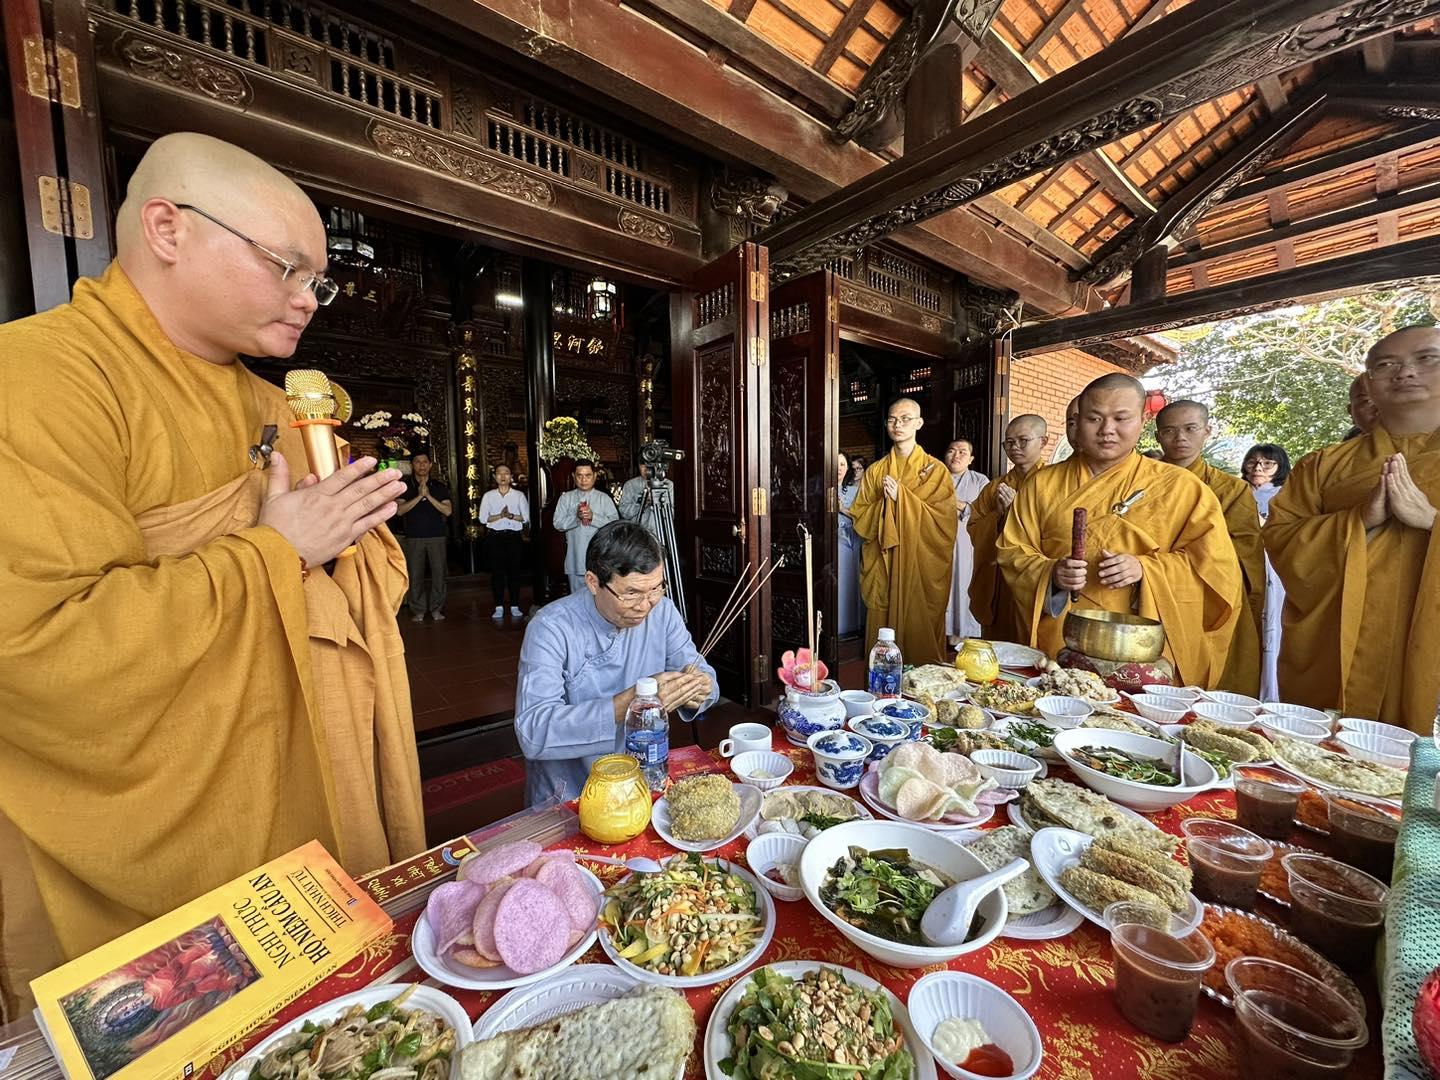 Tăng đoàn chùa Giác Ngộ trang nghiêm thực hiện khóa lễ cầu an đầu năm hộ trì doanh nghiệp Phật tử